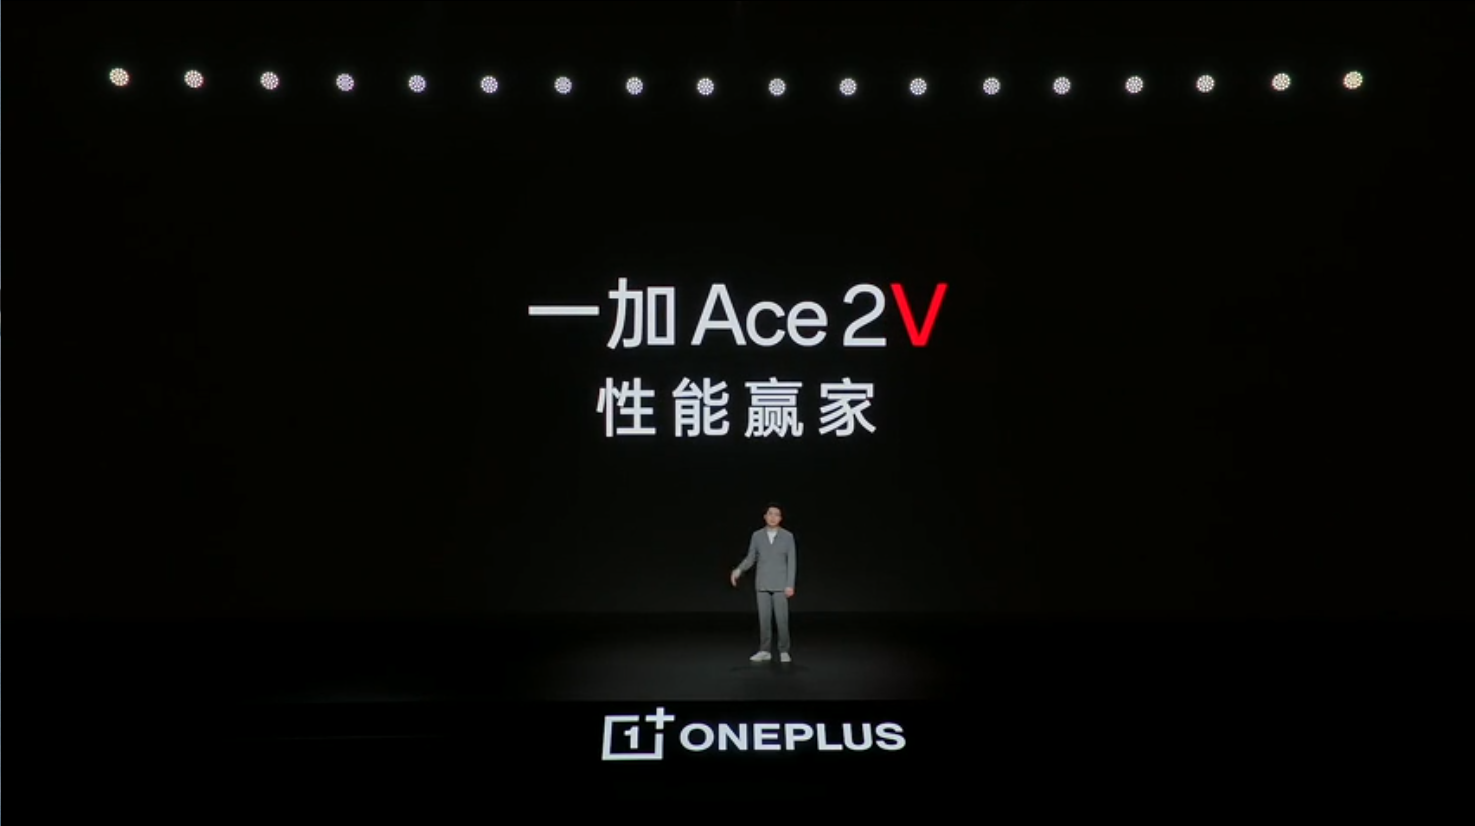 一加 Ace 2V 新品发布全程回顾-充电头网